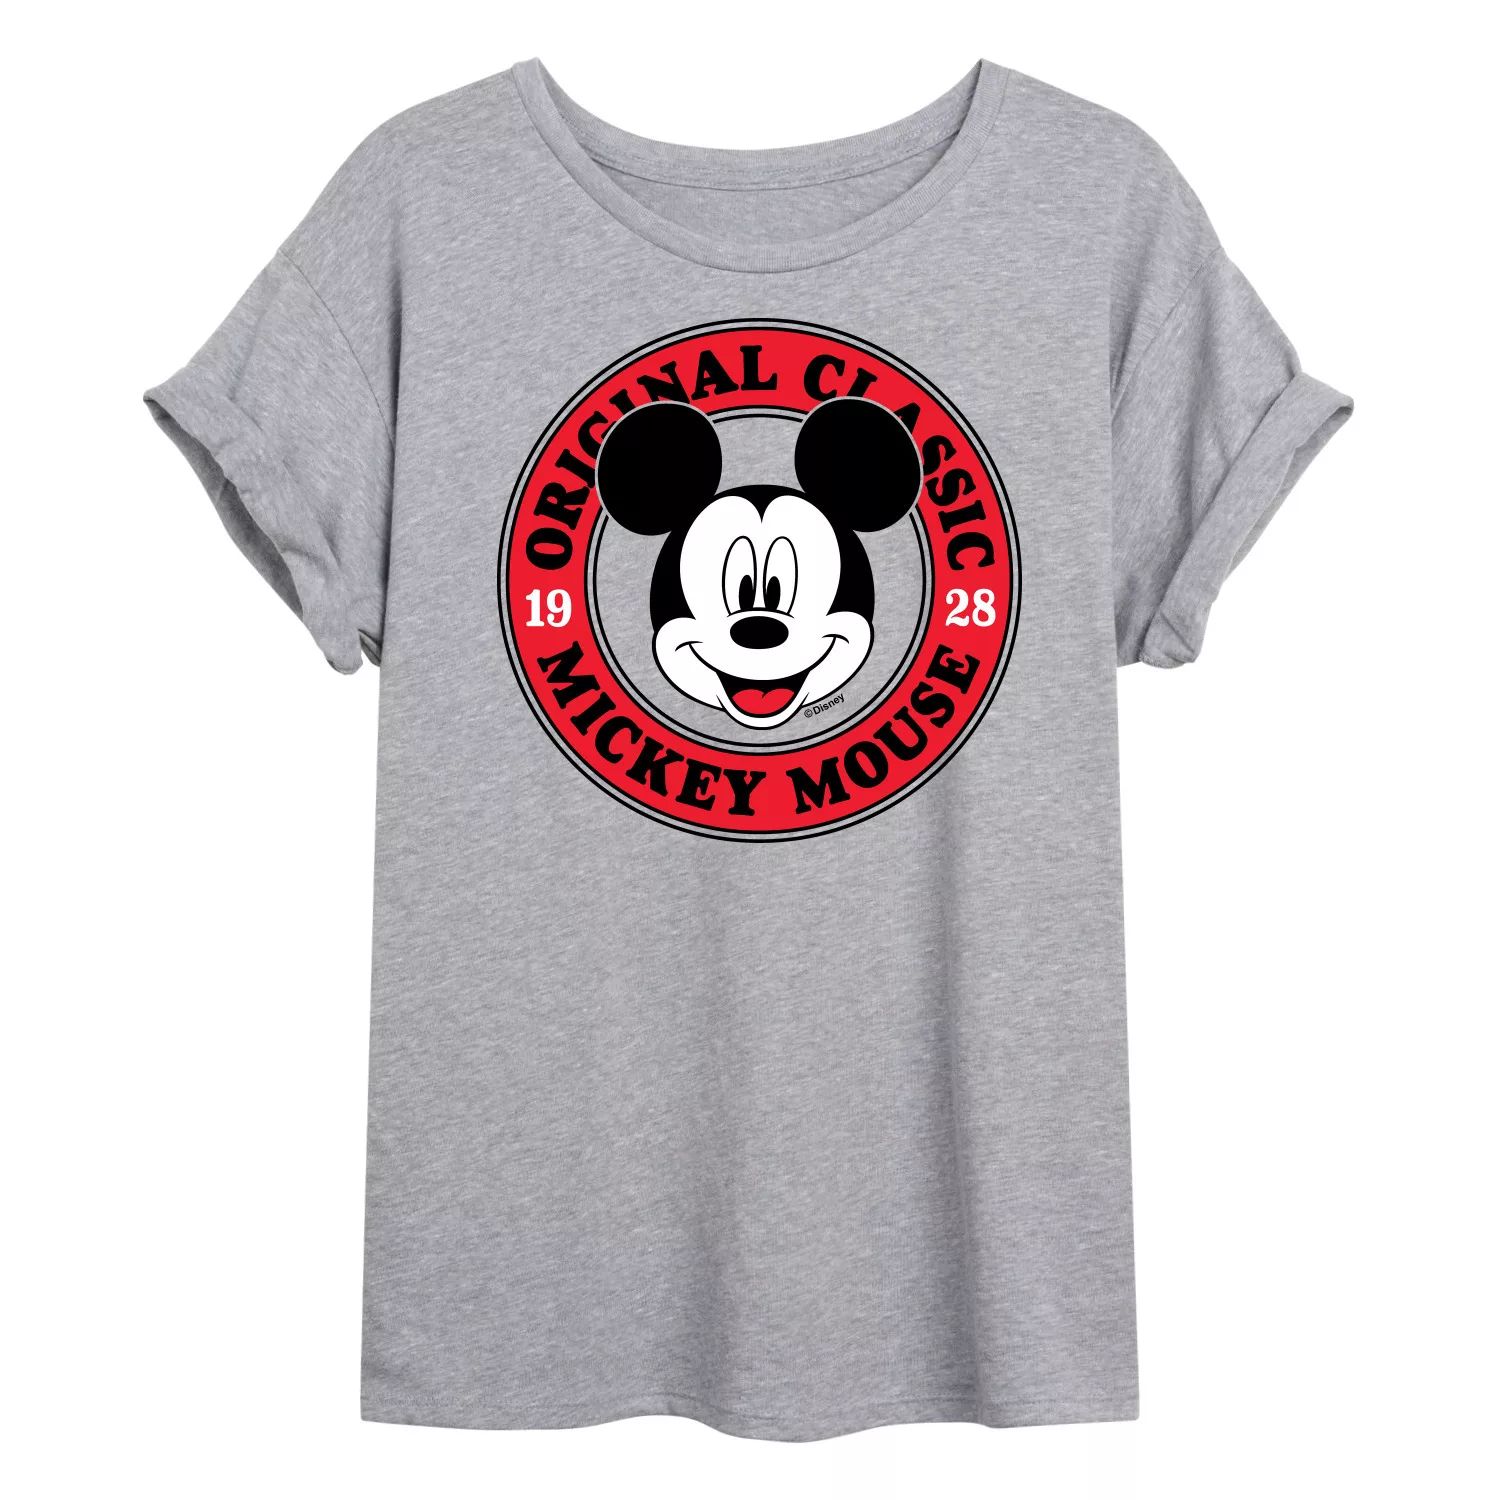 Классическая футболка Disney's Mickey Mouse для детей с струящимся рисунком Микки Мауса Disney одноразовая маска для детей и взрослых disney защитный чехол для лица с рисунком аниме дональд дак с рисунком микки мауса для детей